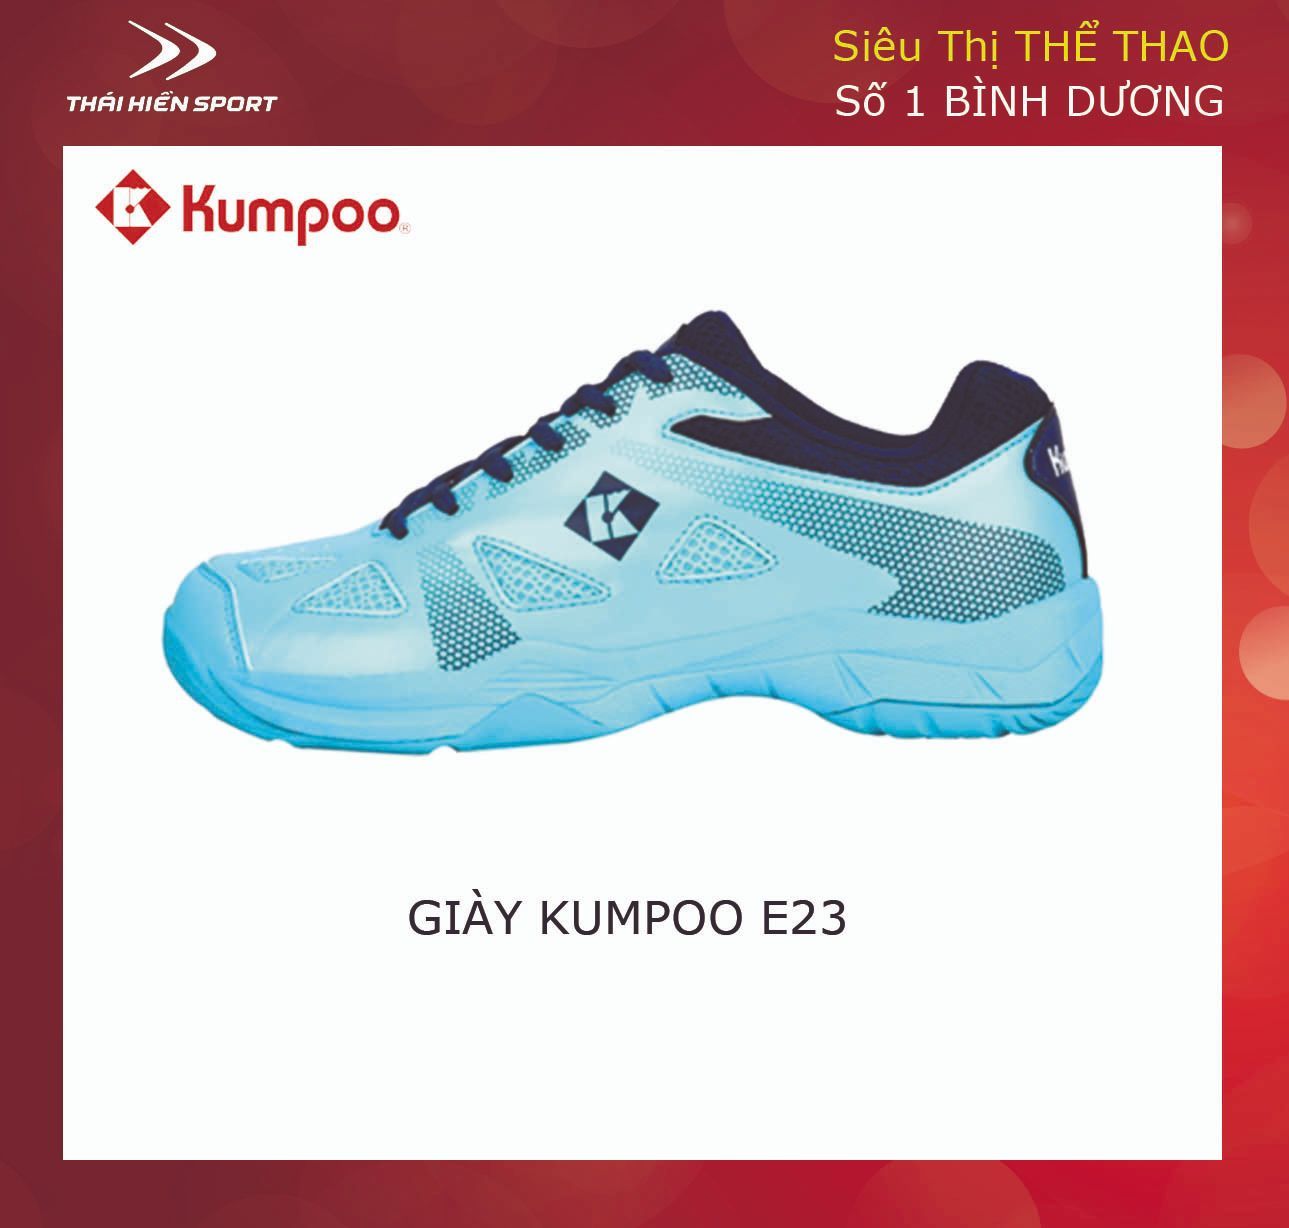  Giày cầu lông Kumpoo E23 xanh ngọc 